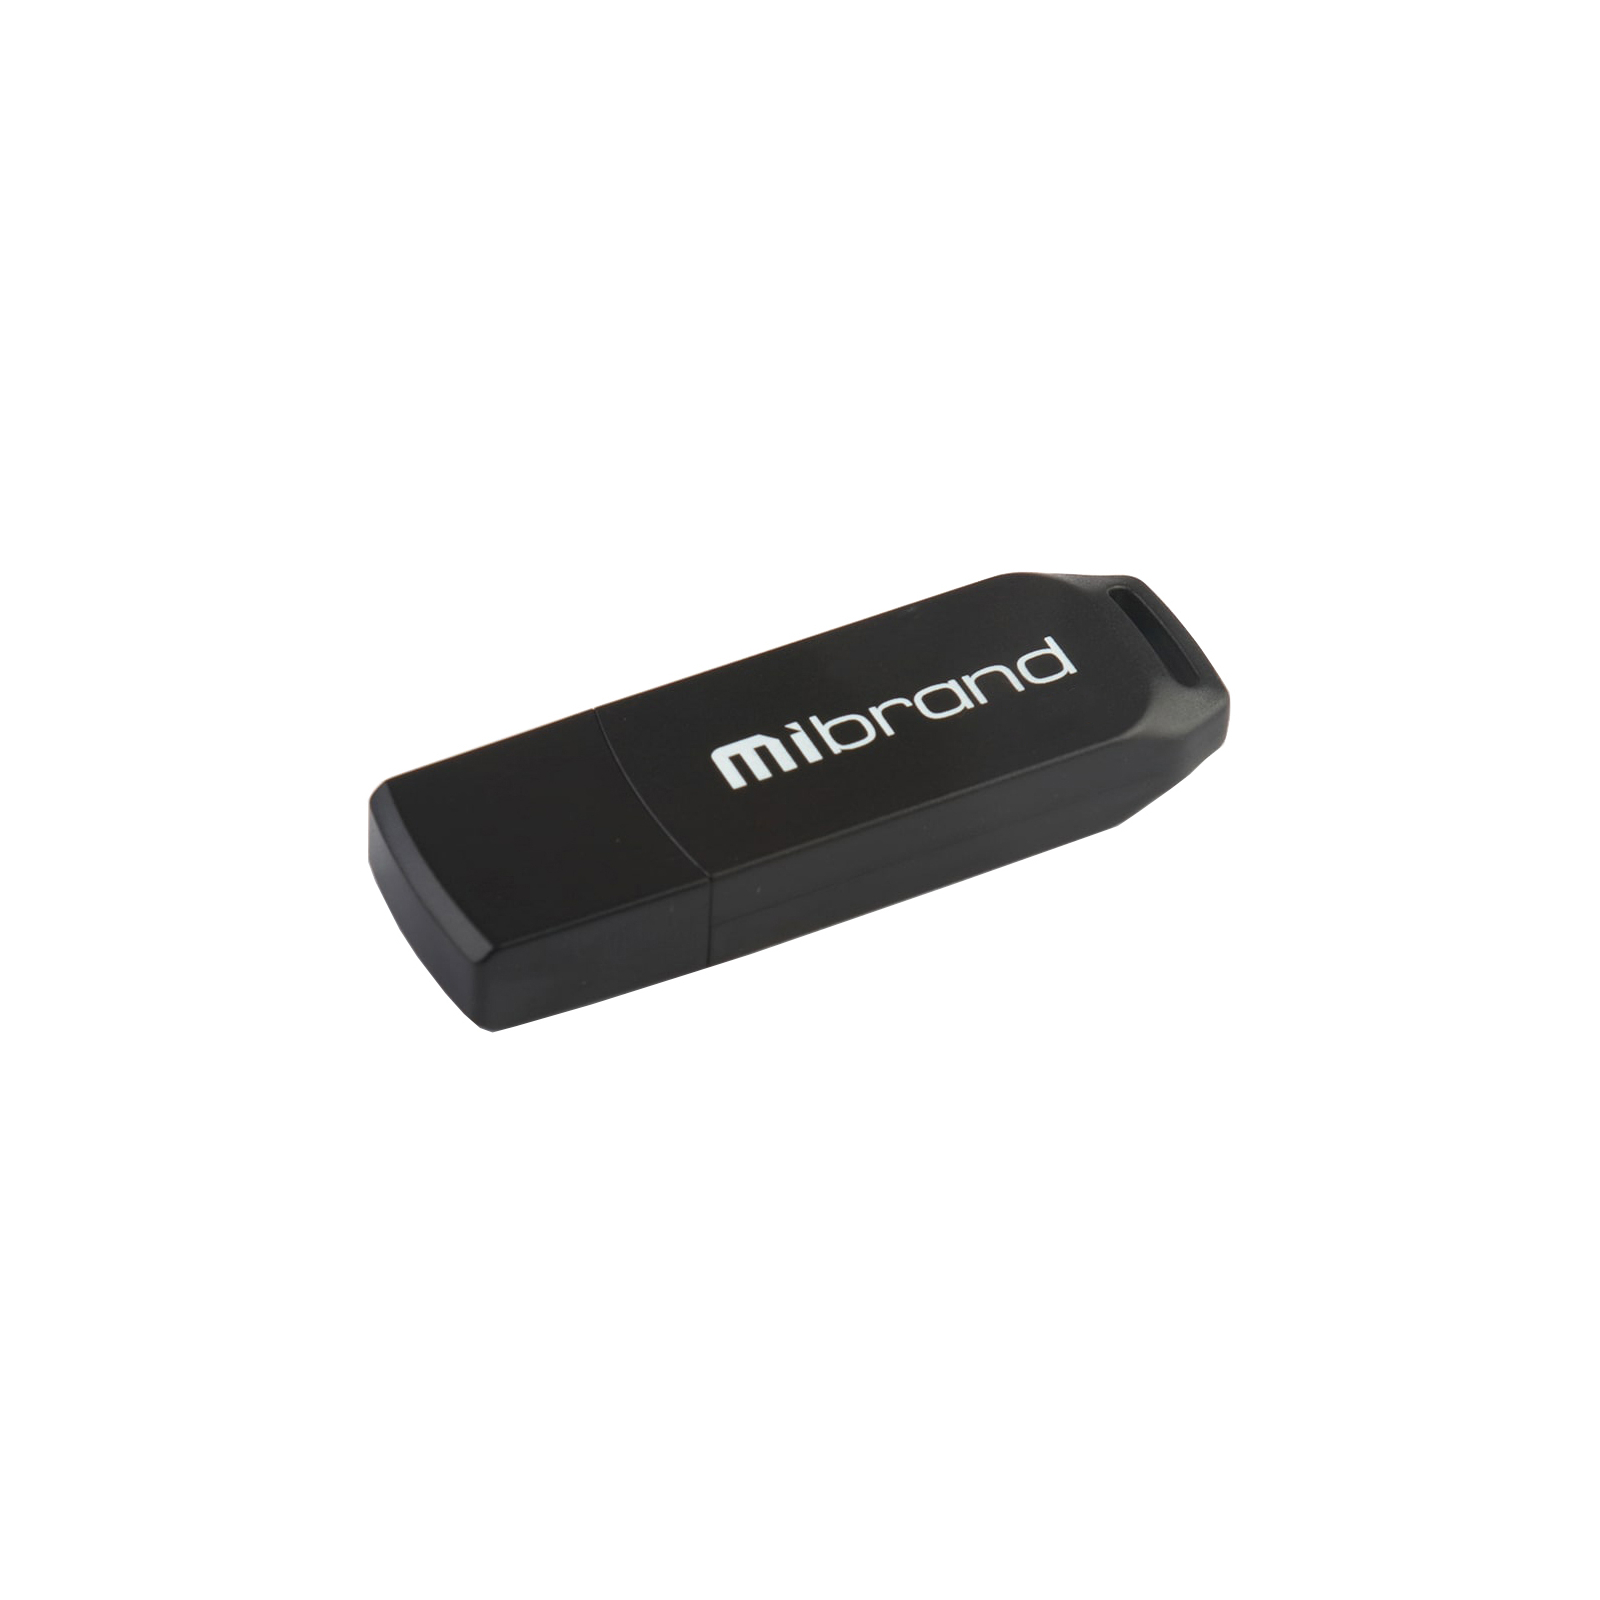 USB флеш накопичувач Mibrand 32GB Mink Black USB 2.0 (MI2.0/MI32P4B)